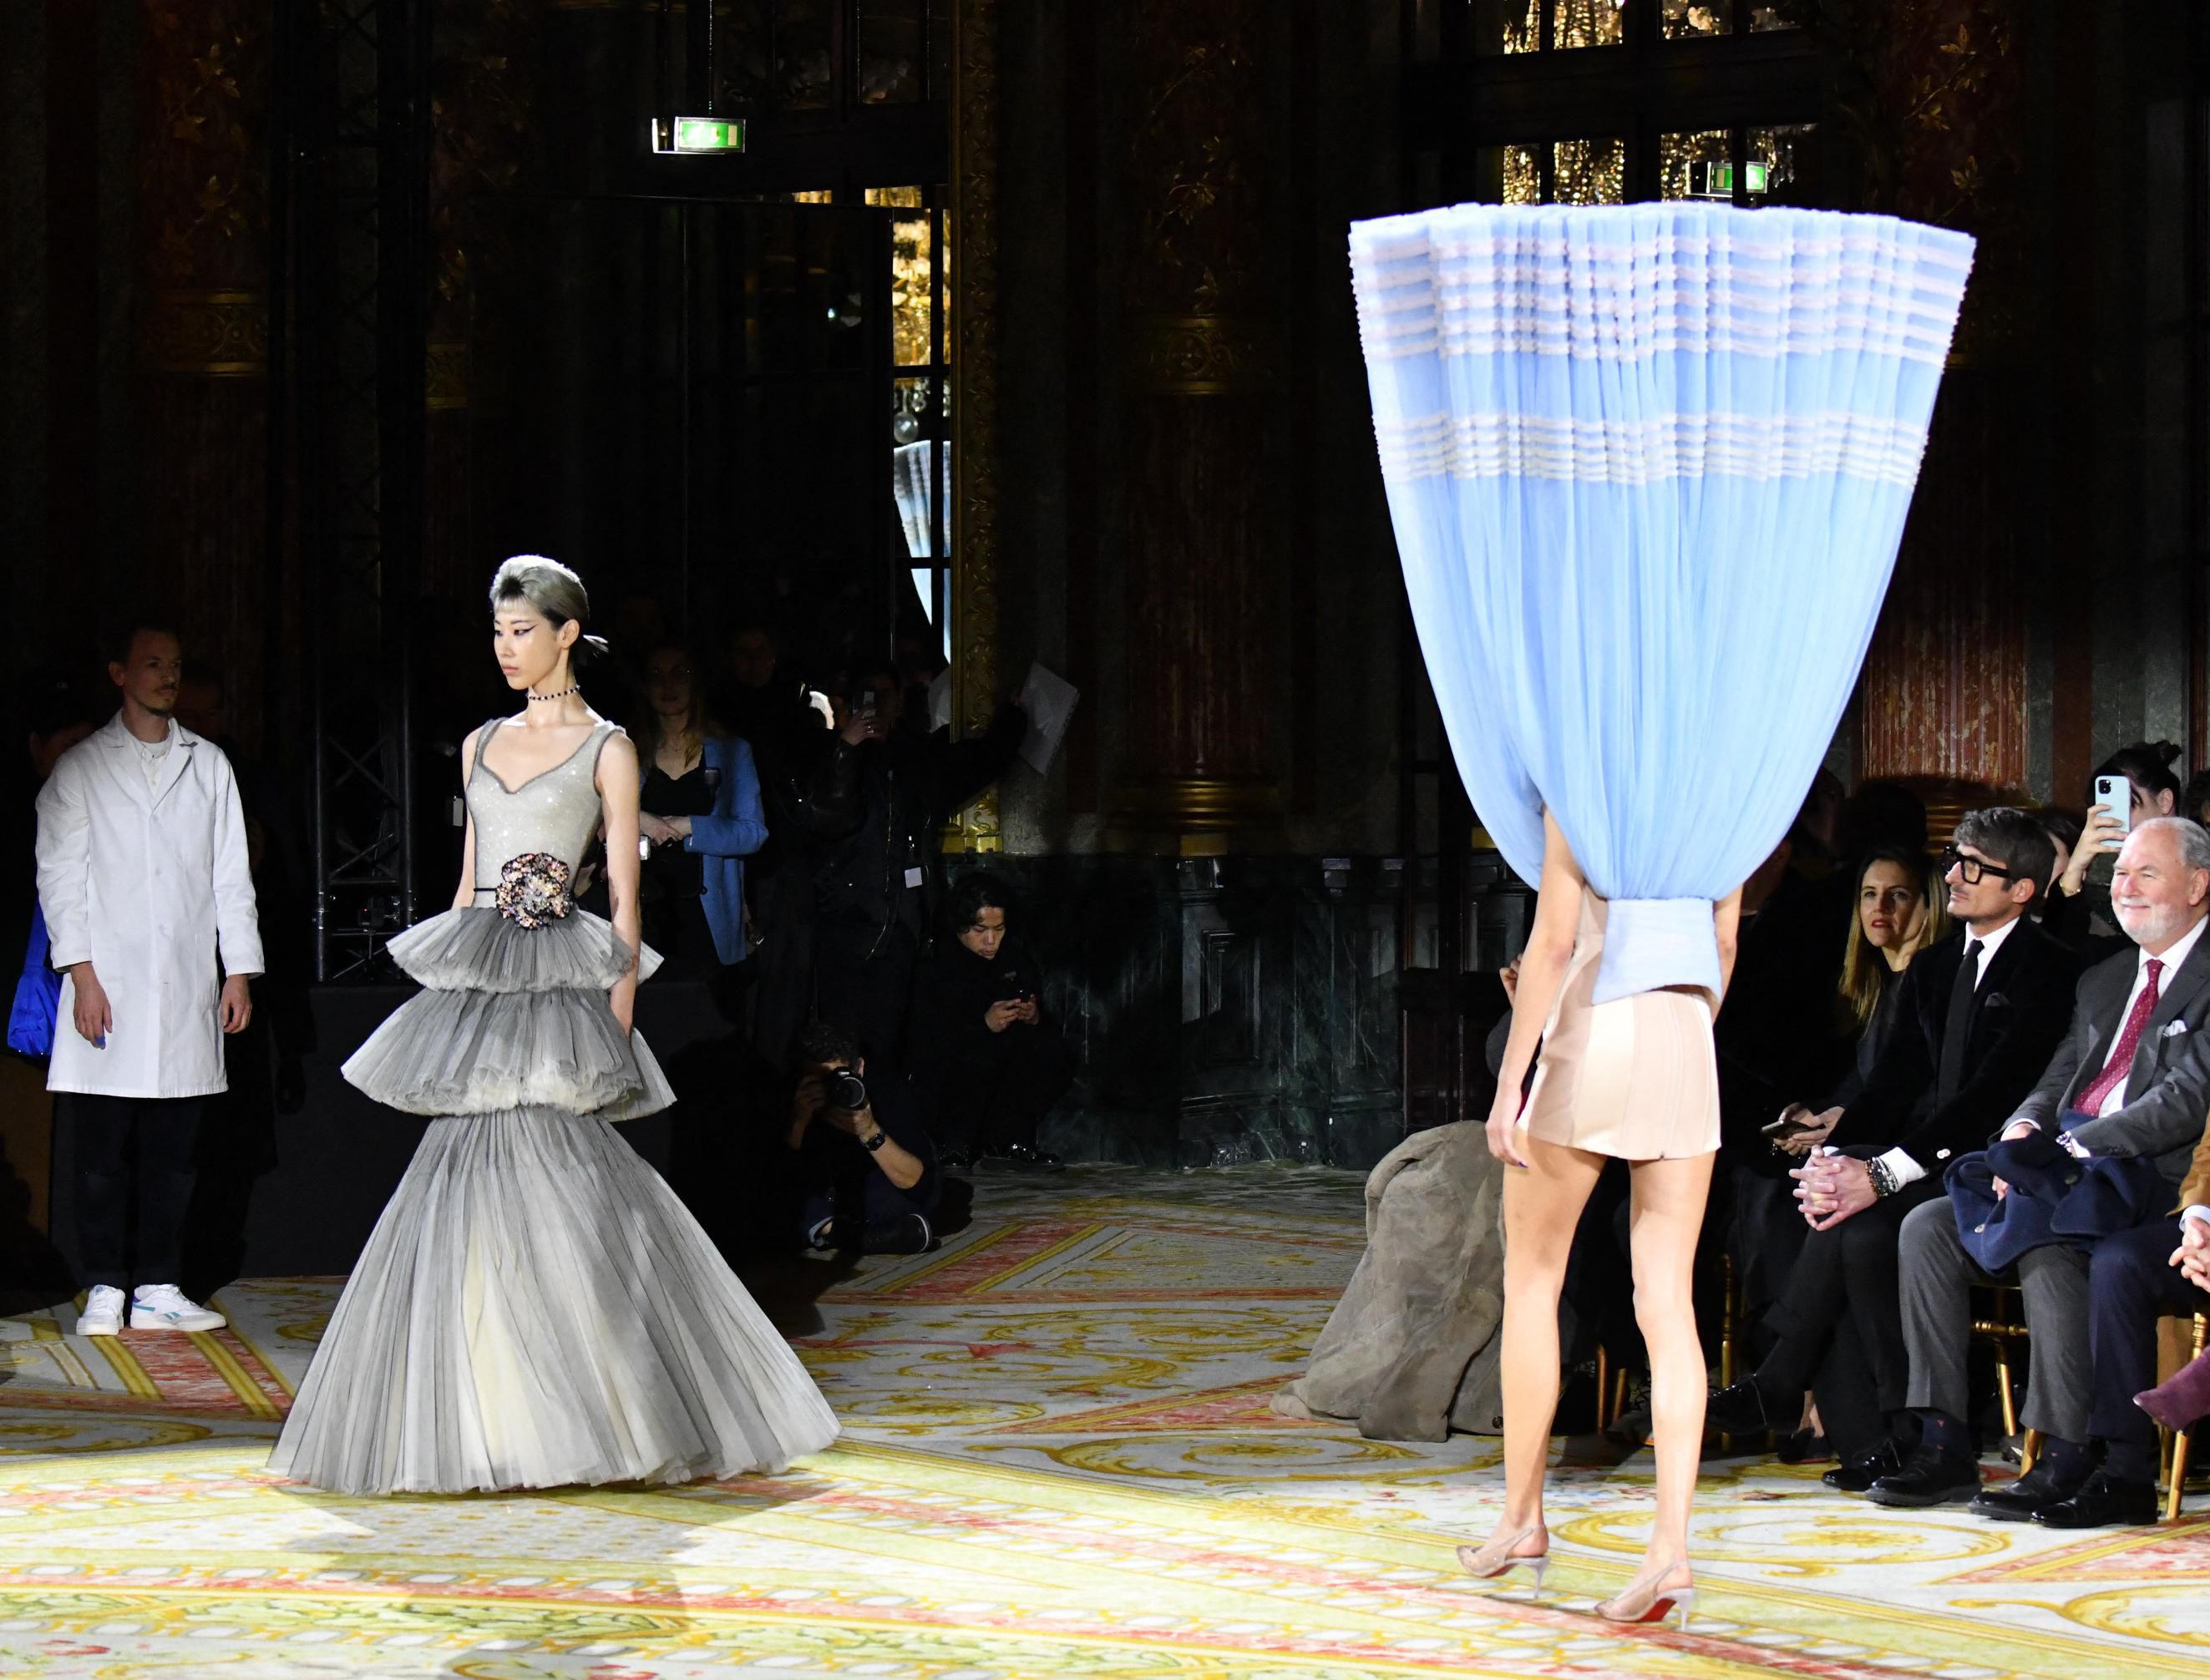 Totalno 'pomaknuta' kolekcija: Na Tjednu mode u Parizu prikazana zabavna i sasvim neobična revija